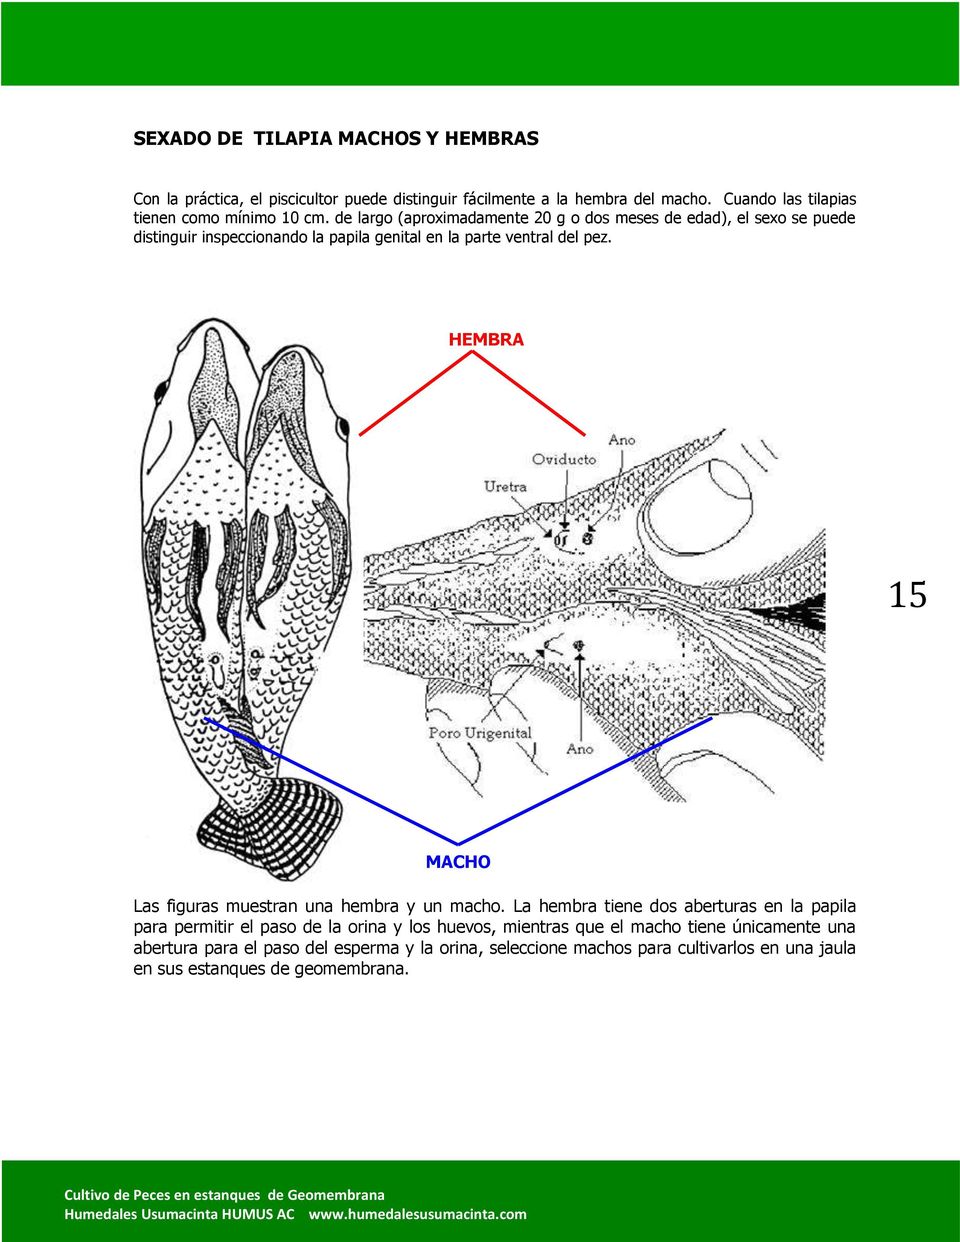 de largo (aproximadamente 20 g o dos meses de edad), el sexo se puede distinguir inspeccionando la papila genital en la parte ventral del pez.